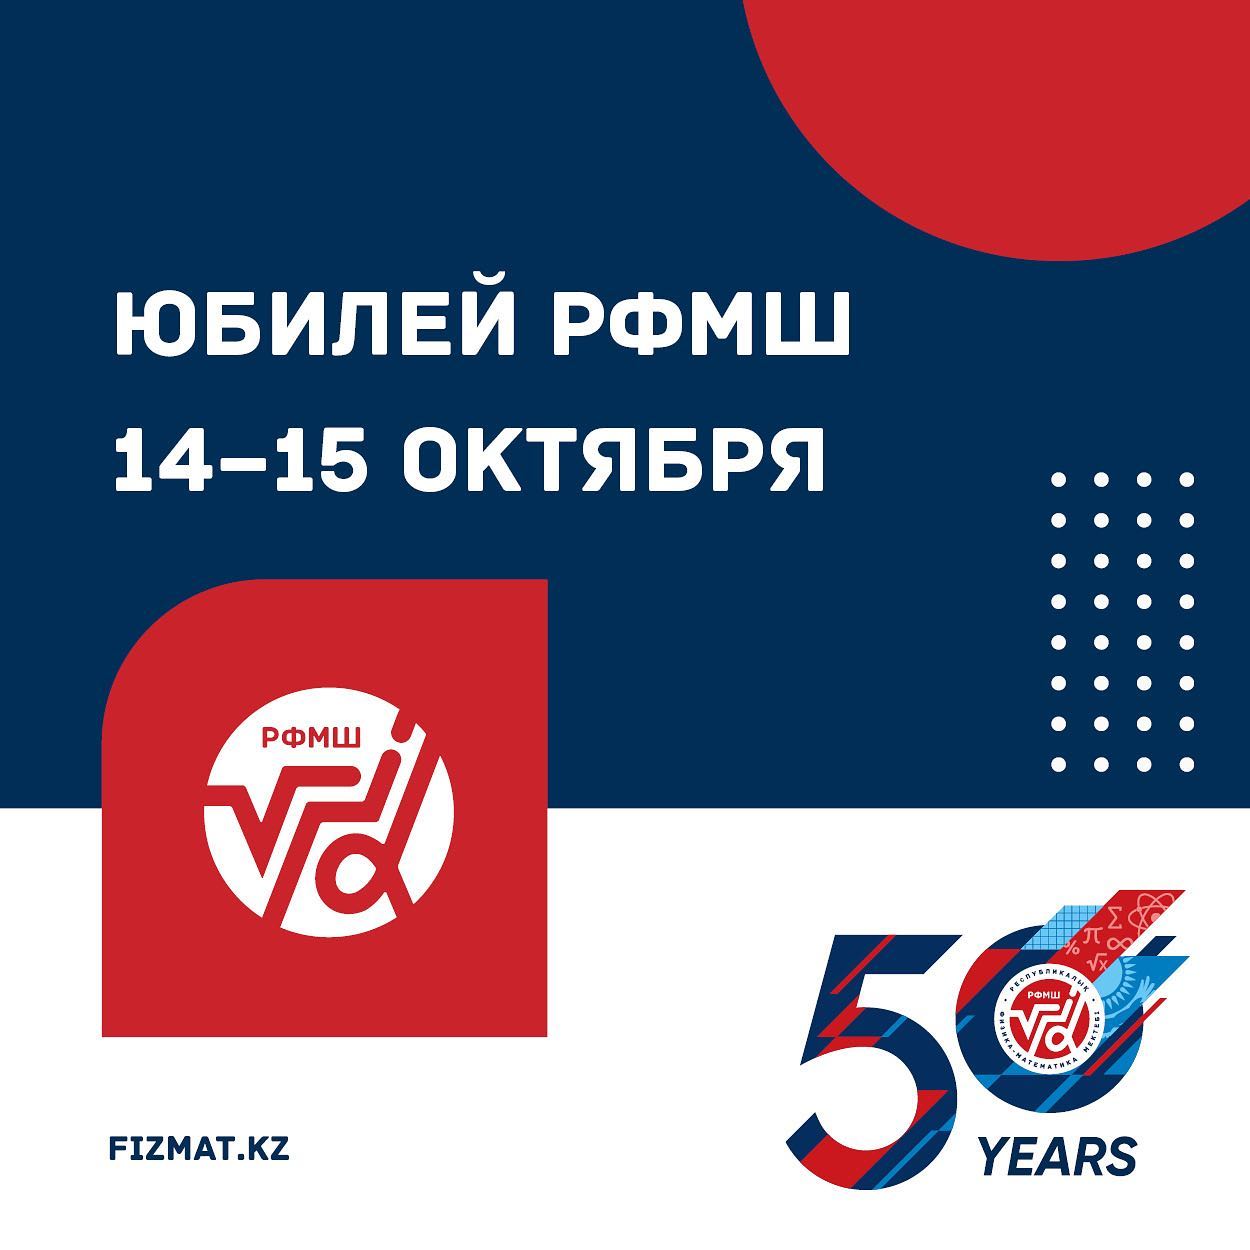 Приглашаем на празднование 50-летия РФМШ